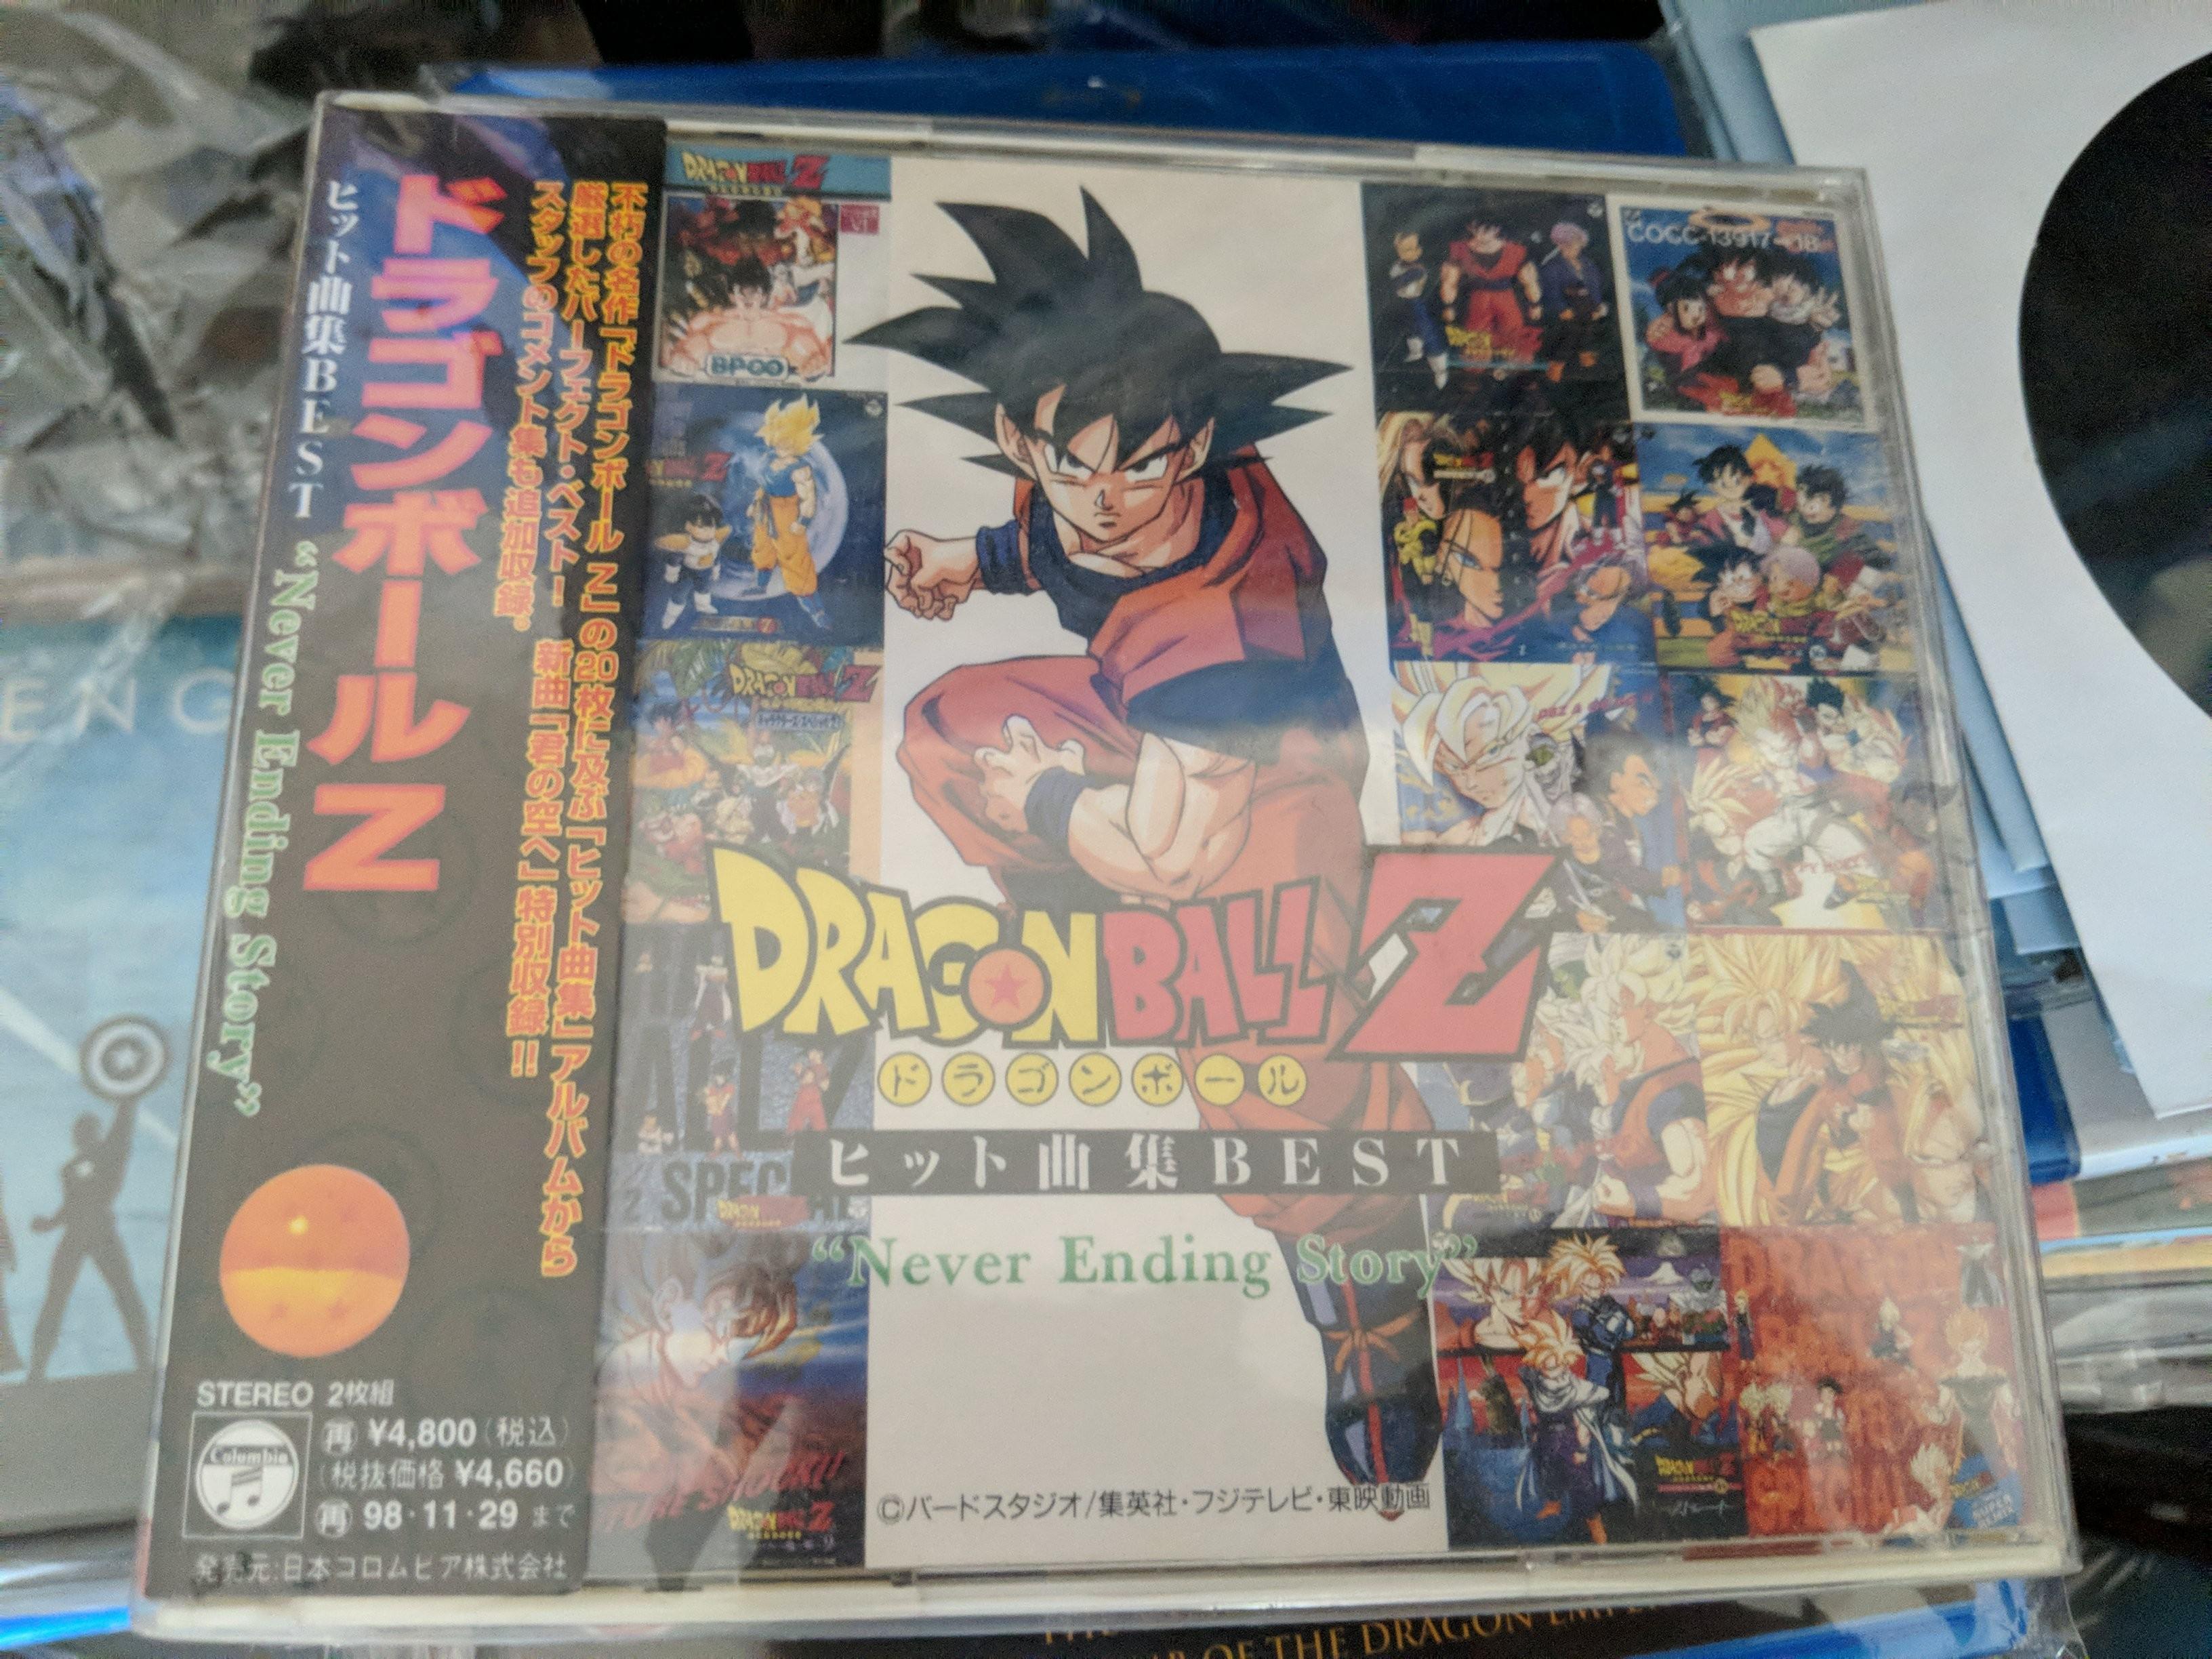 中古日版龍珠Z CD 經典op ed 曲集BEST 